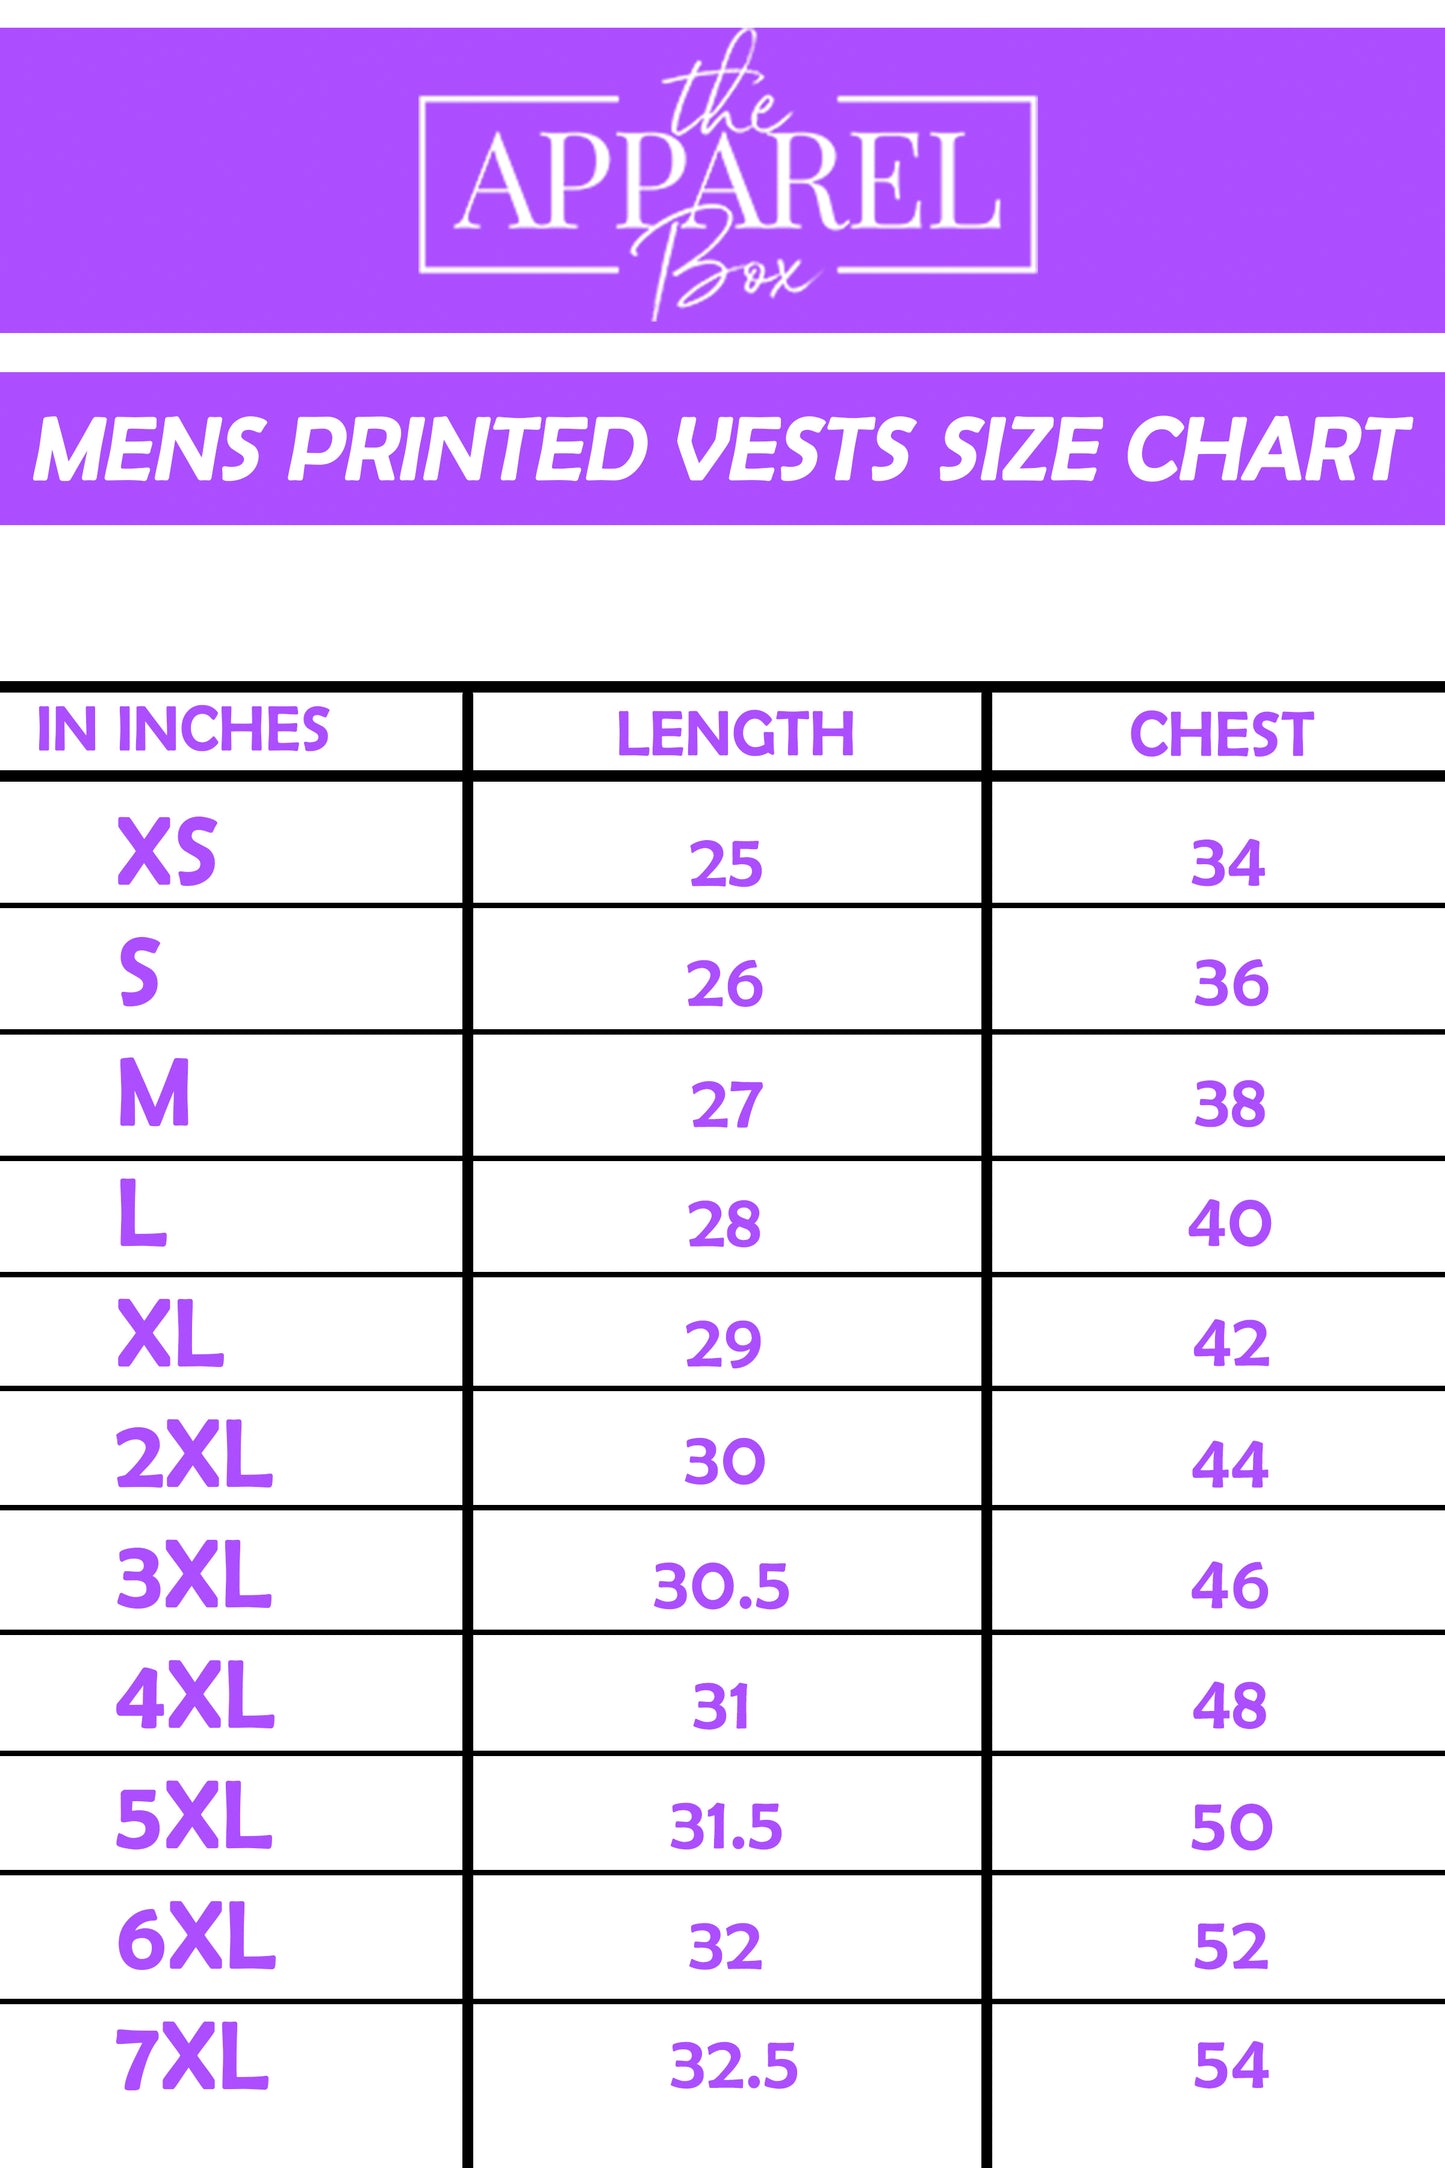 Printed Vest#4